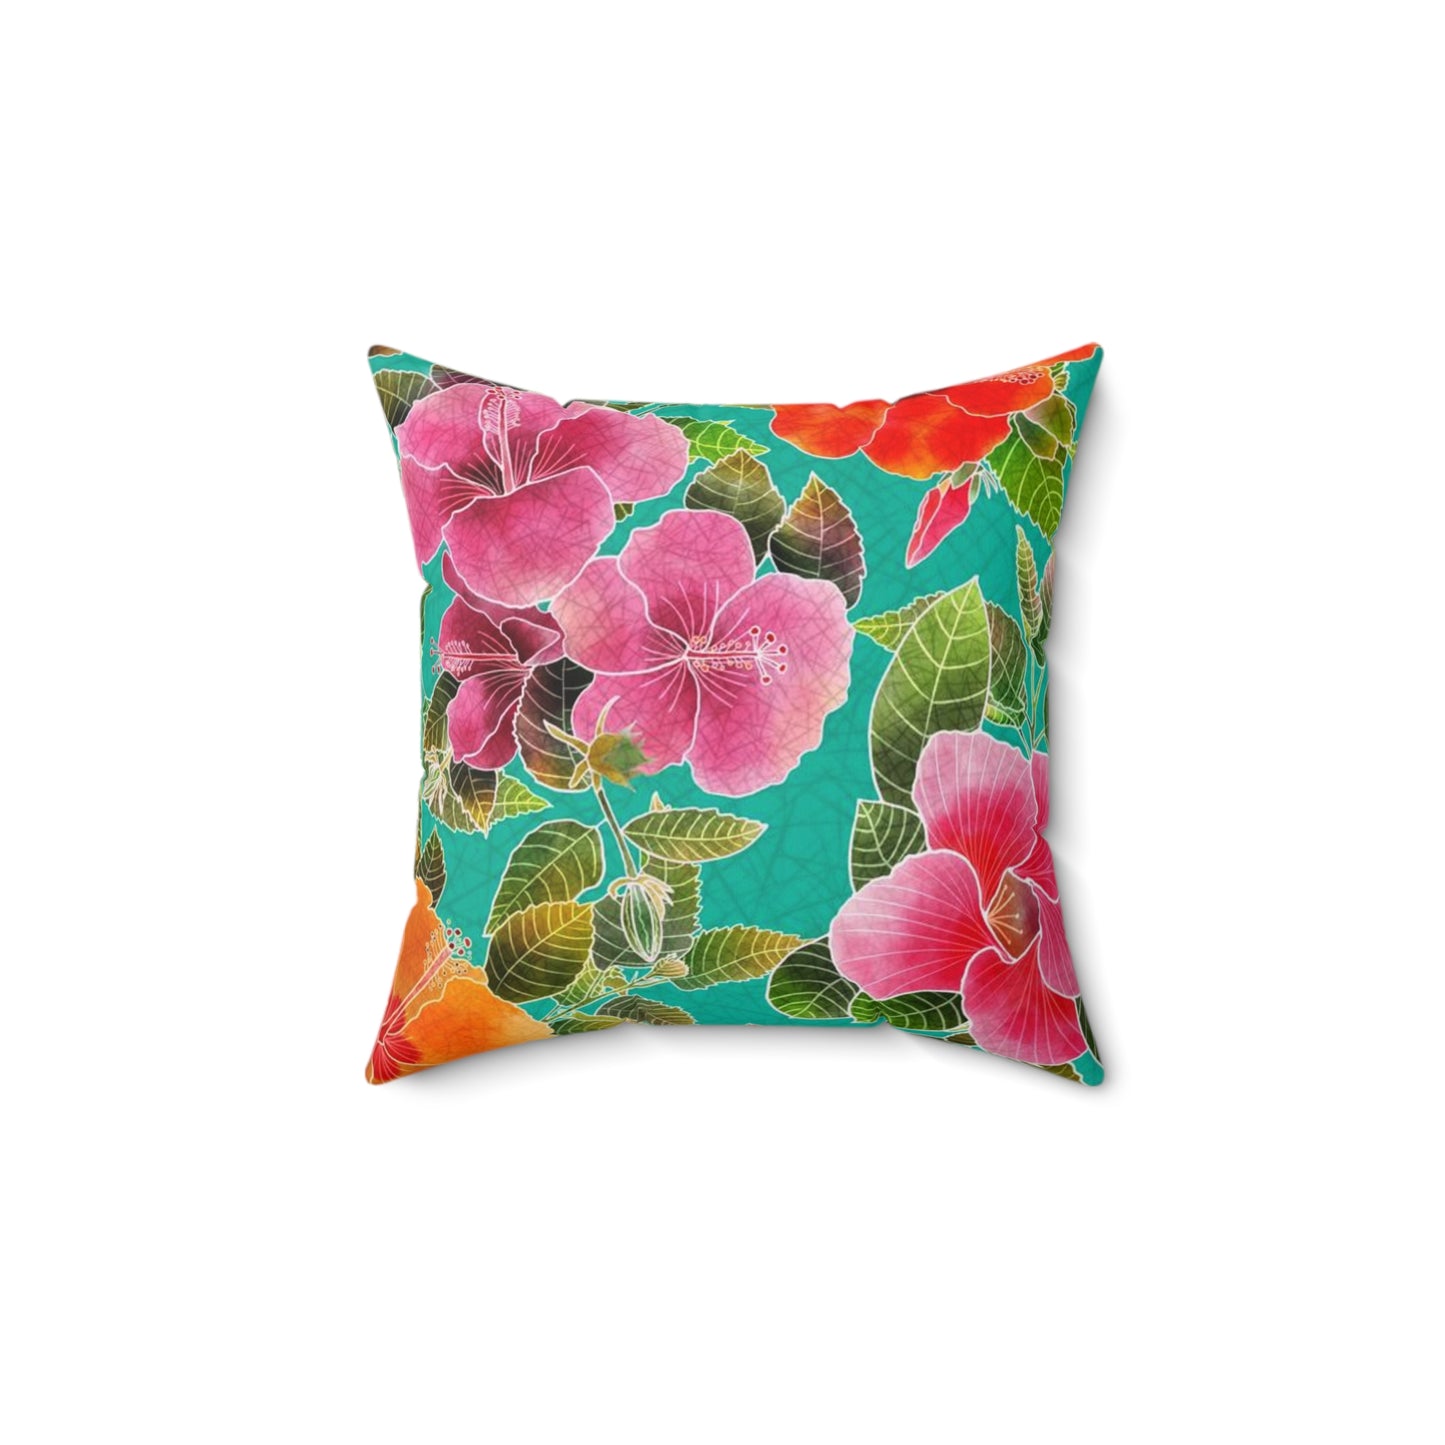 Hibiscus Garden Spun Polyester Square Pillow